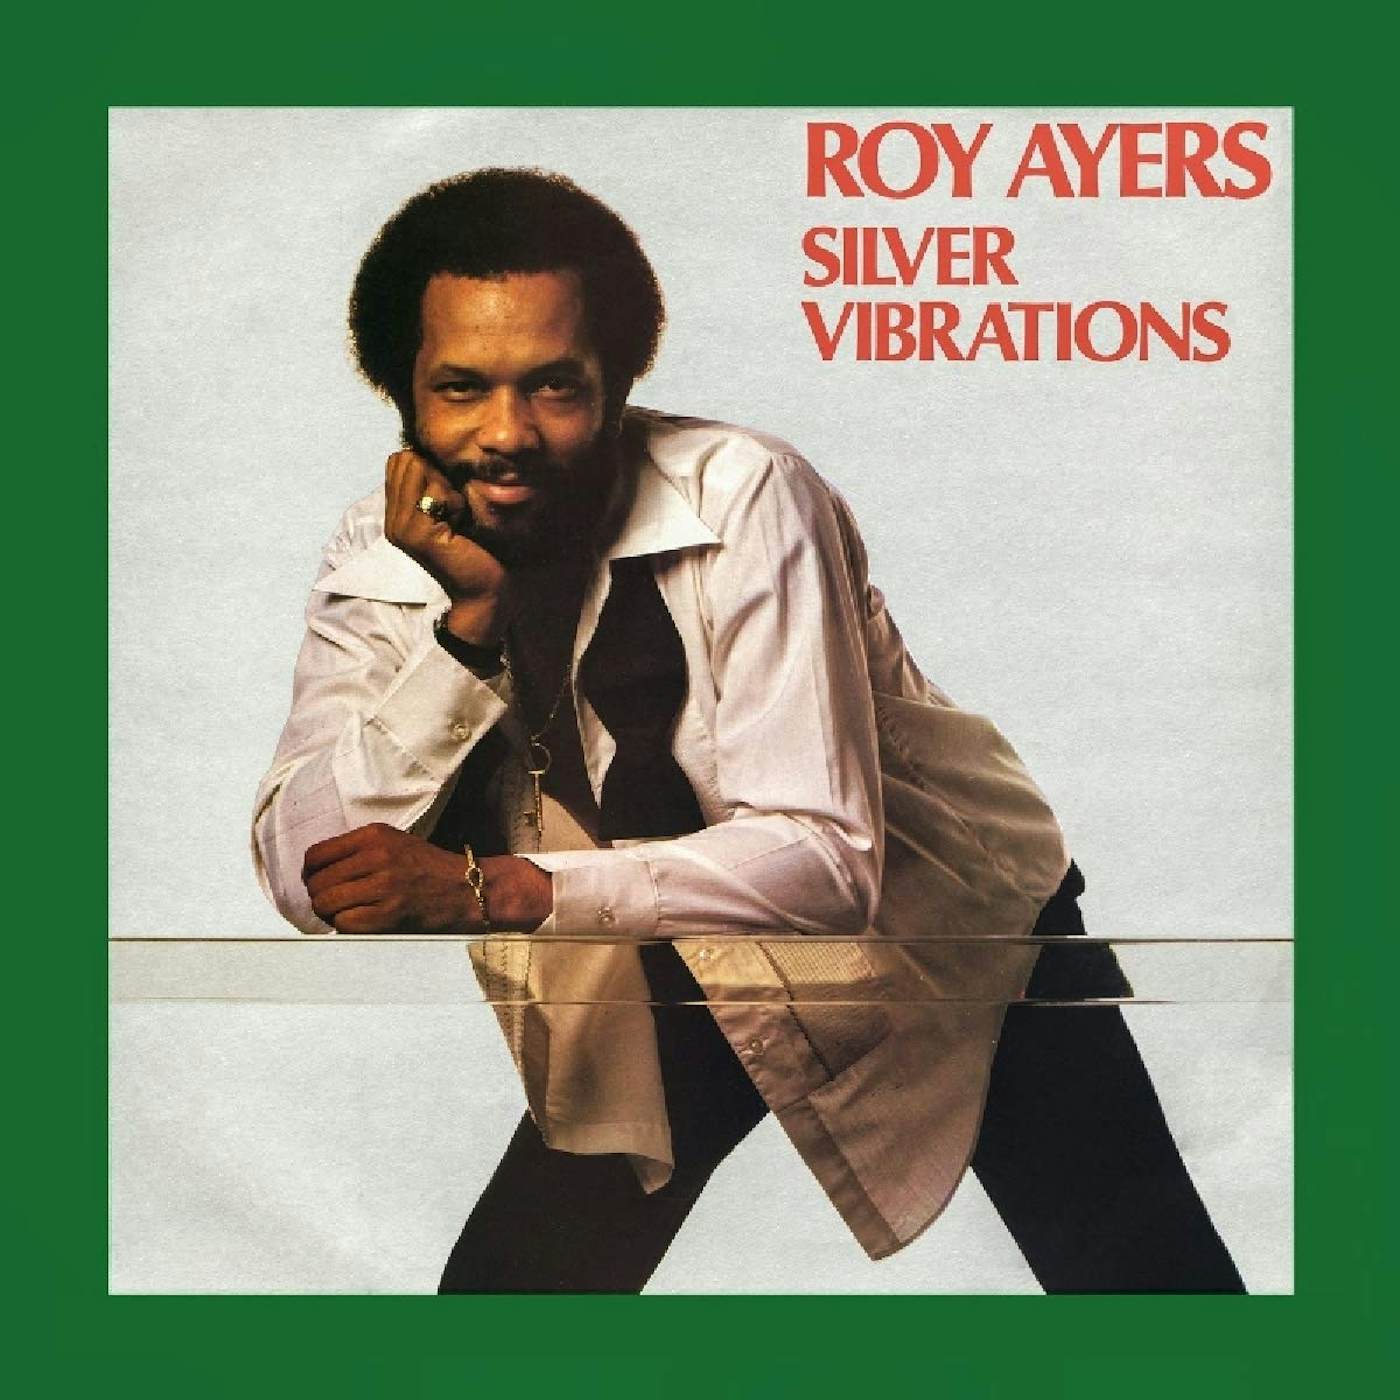 Roy Ayers Silver Vibrations Vinyl Record